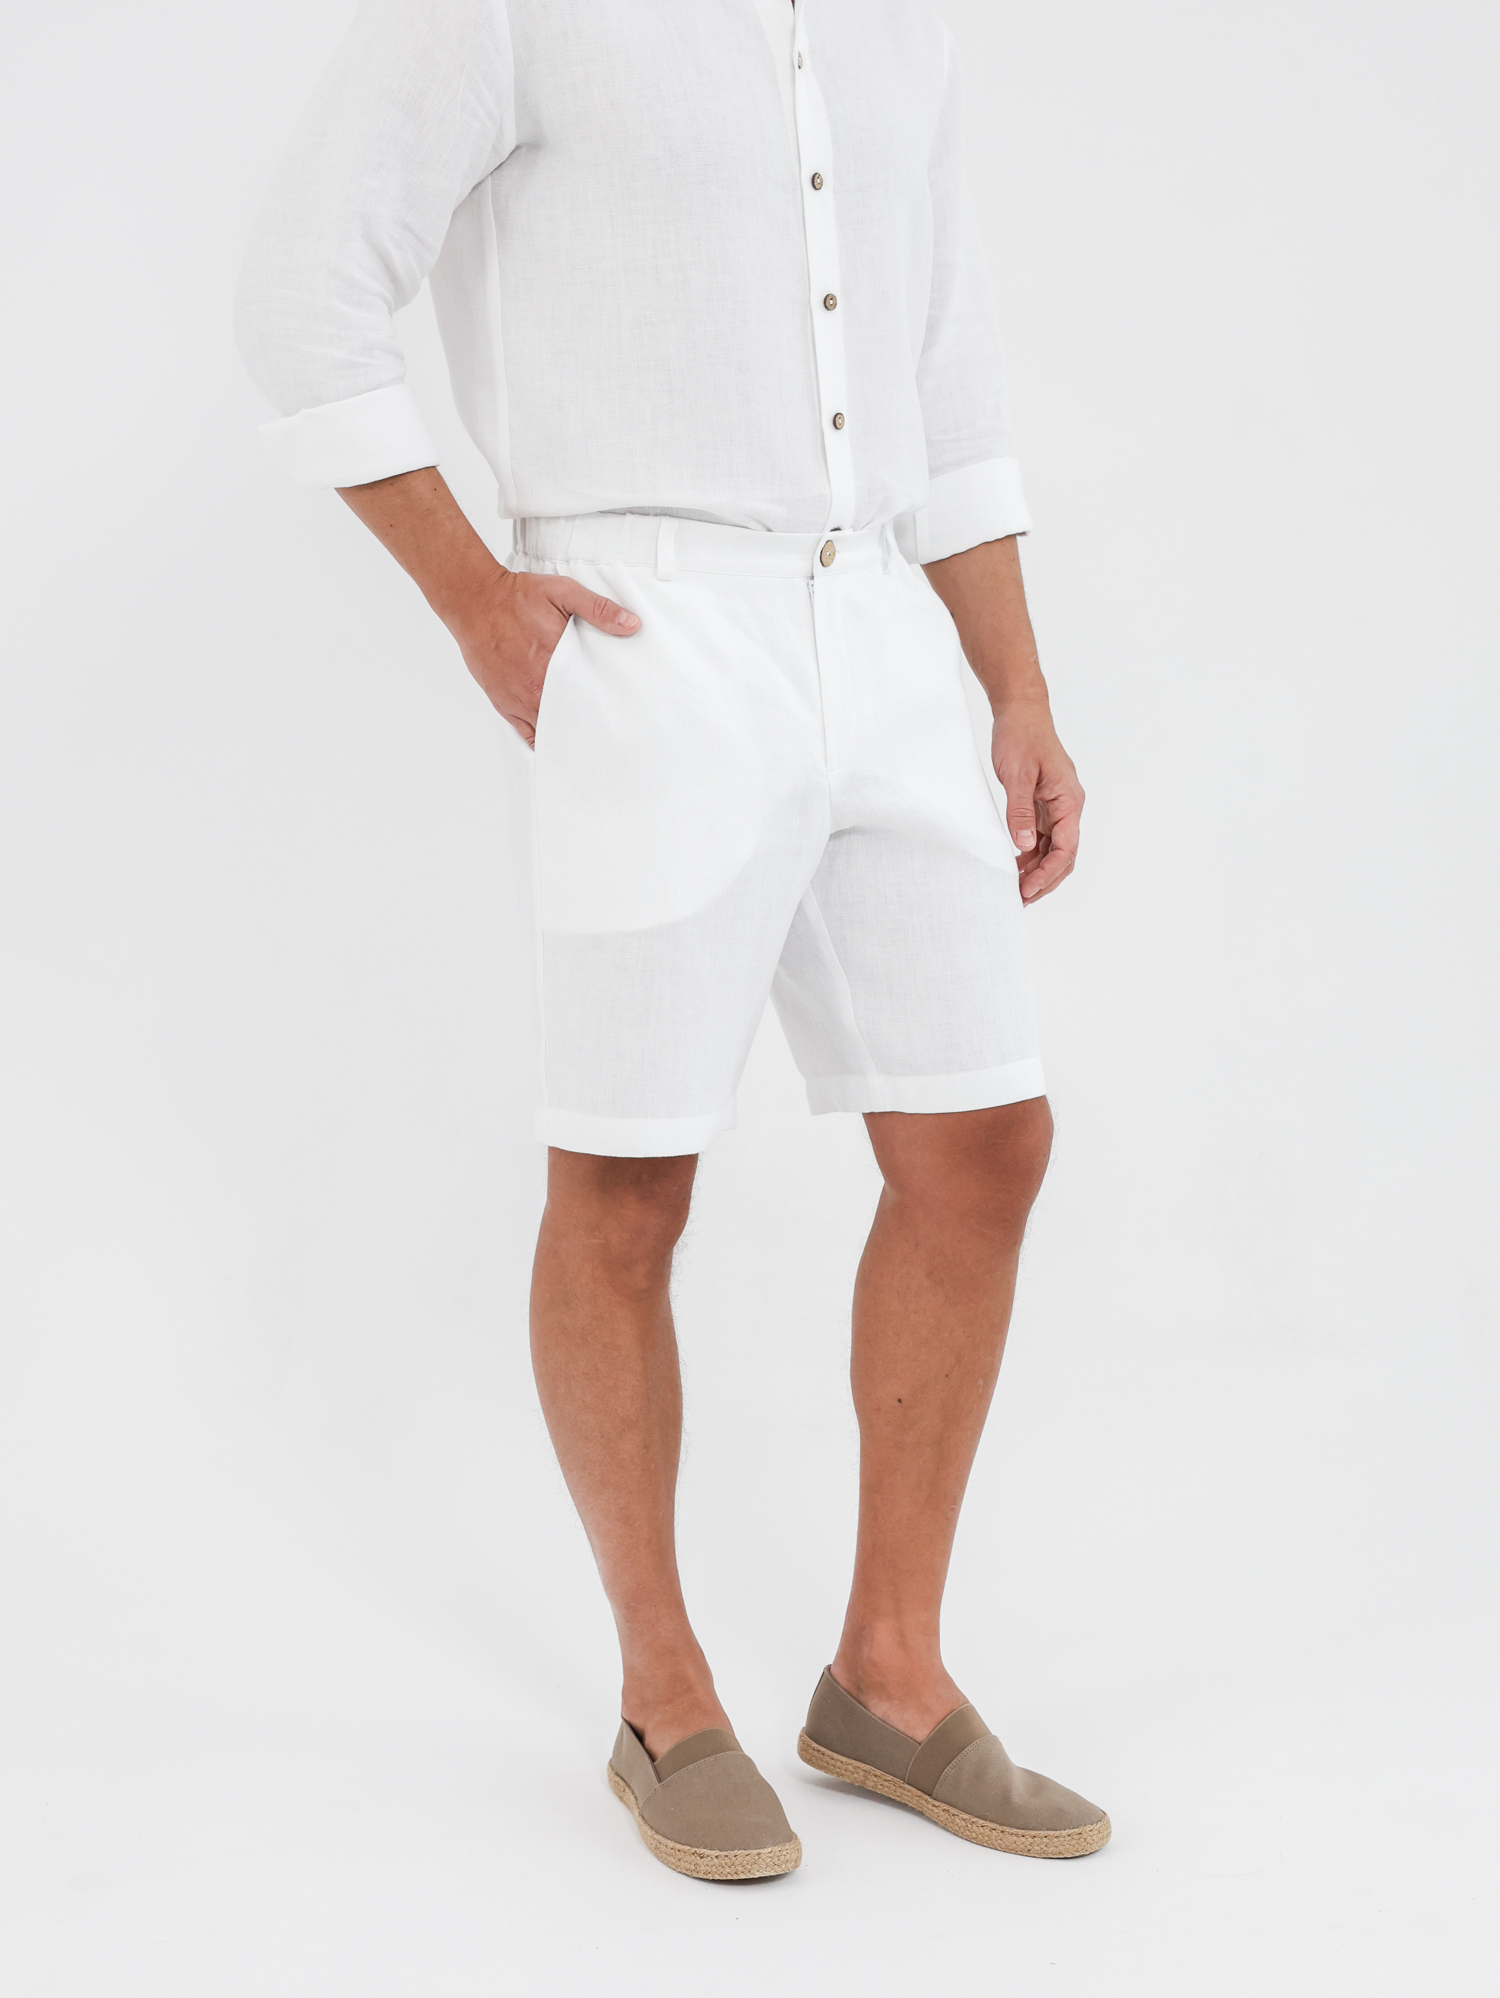 Men's white linen shorts